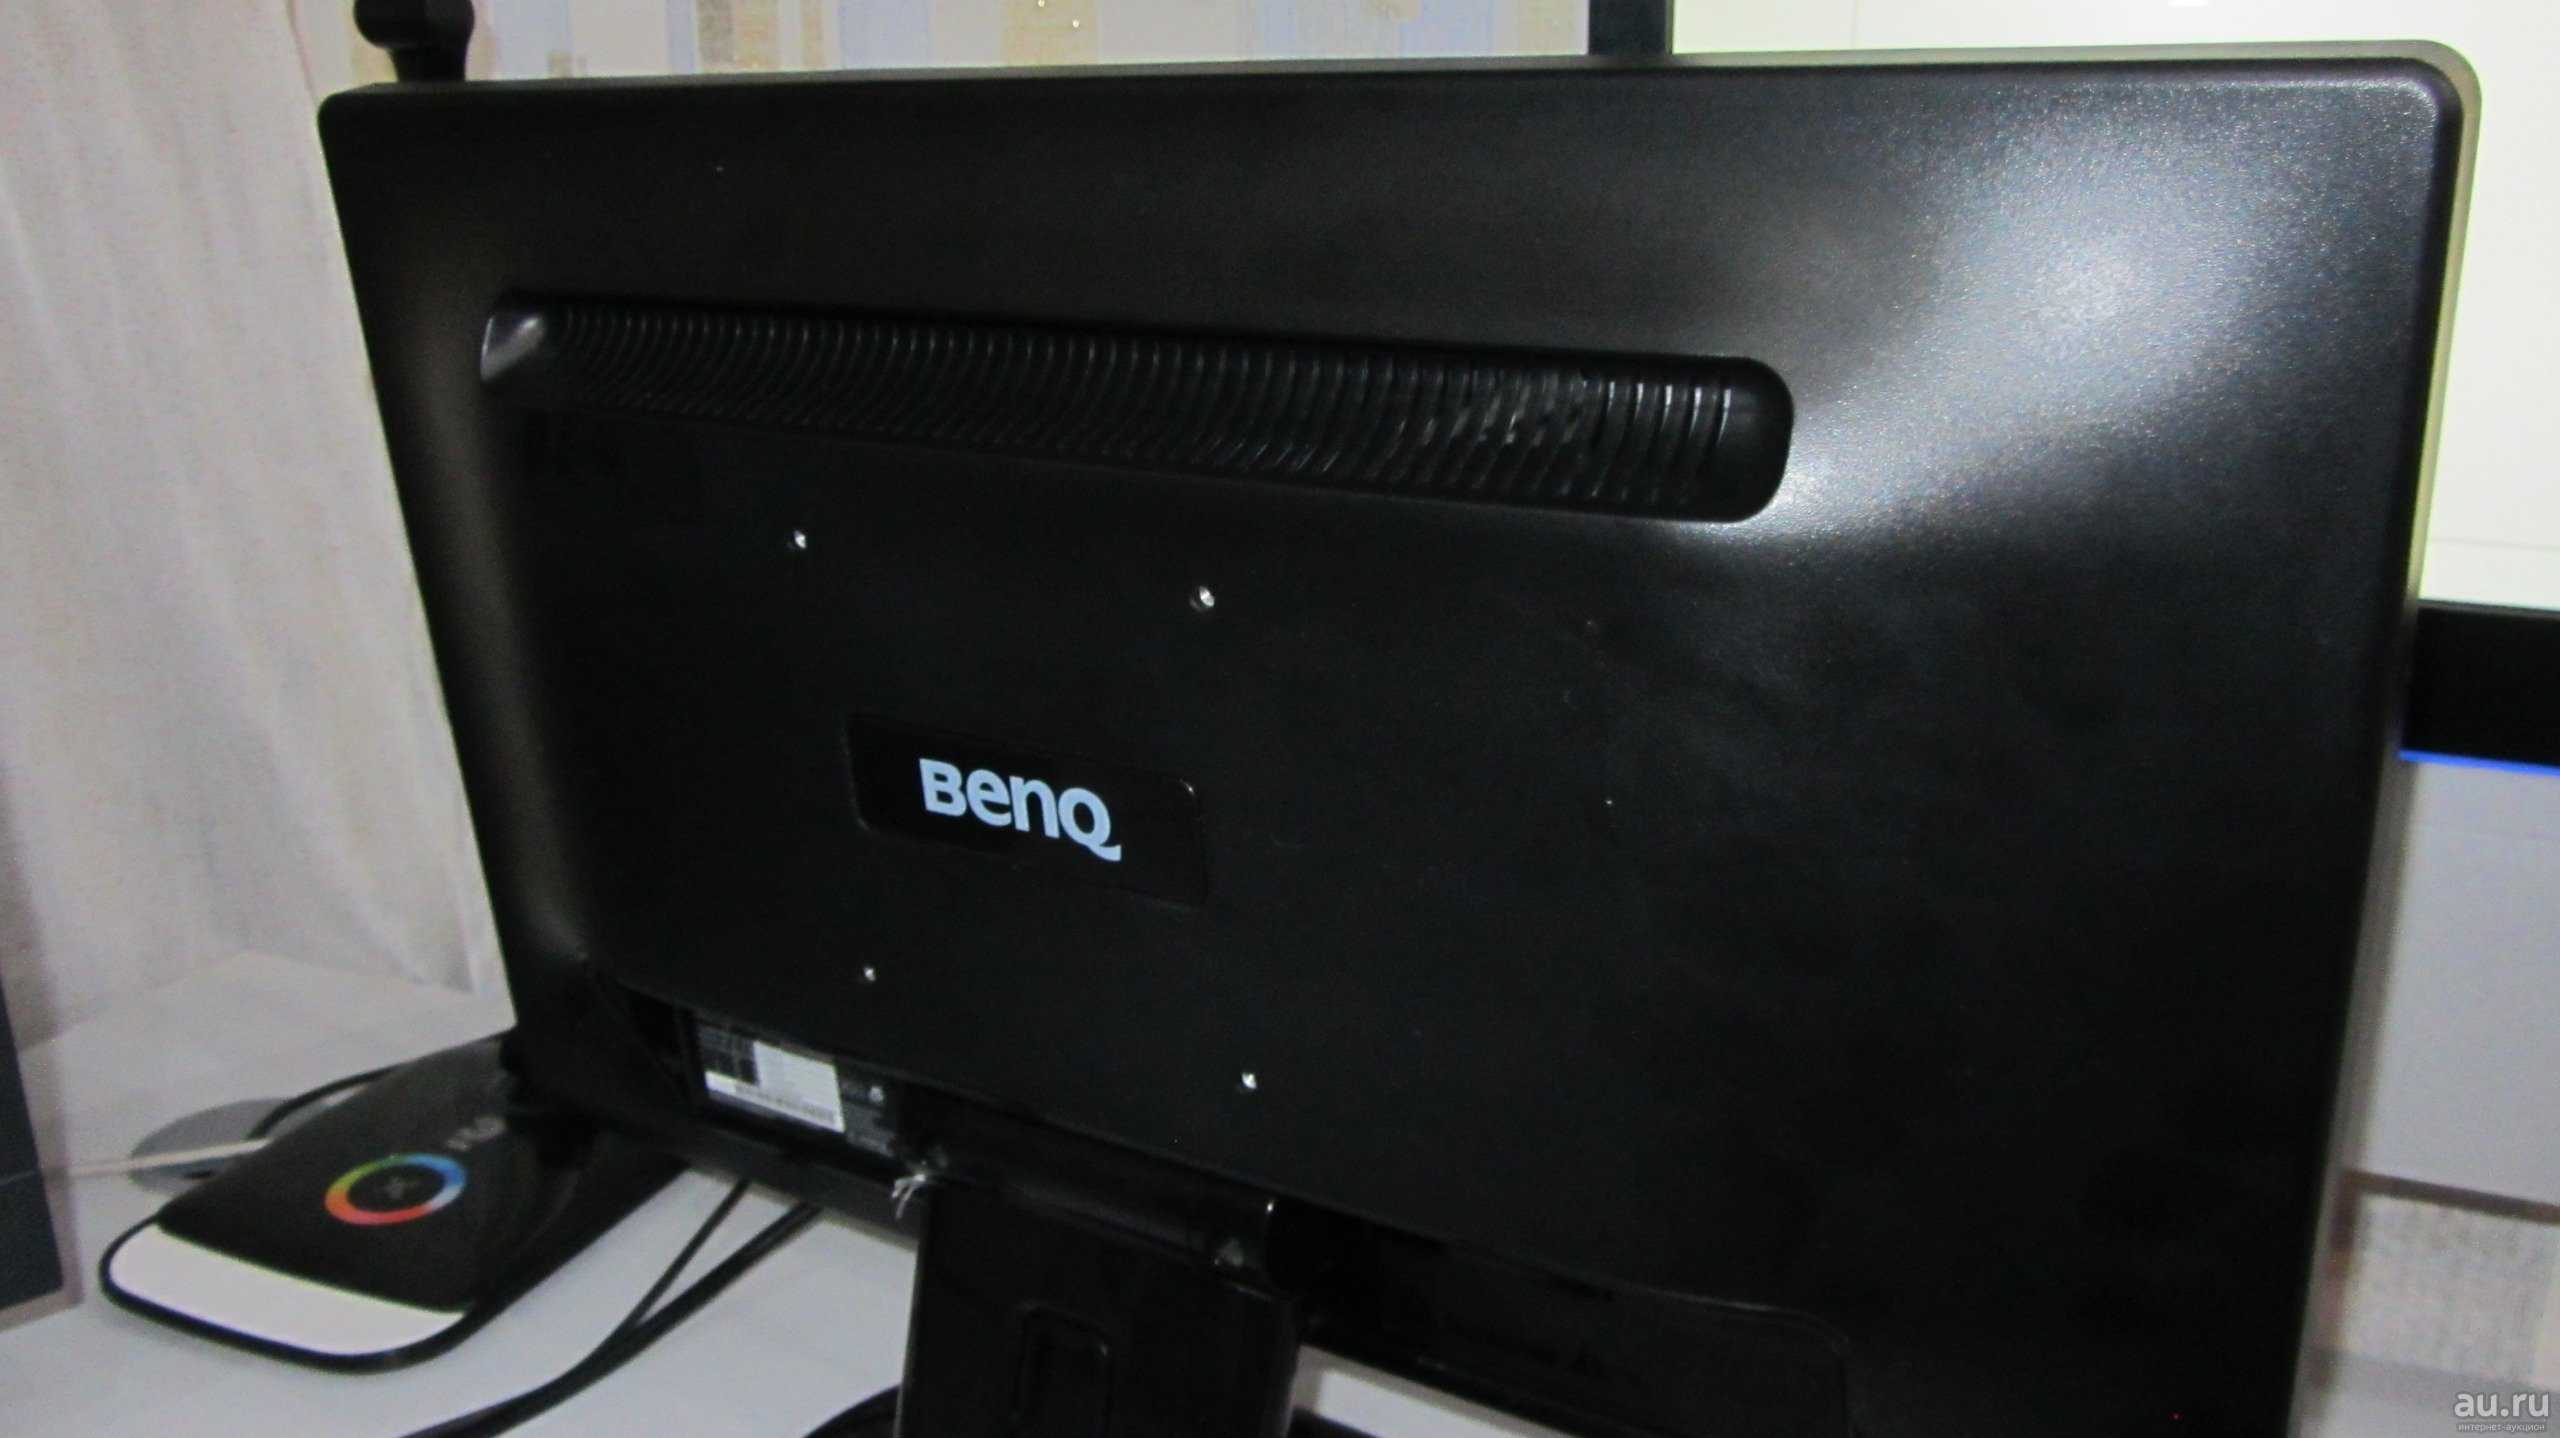 Жк монитор 24" benq g2420hdbl — купить, цена и характеристики, отзывы